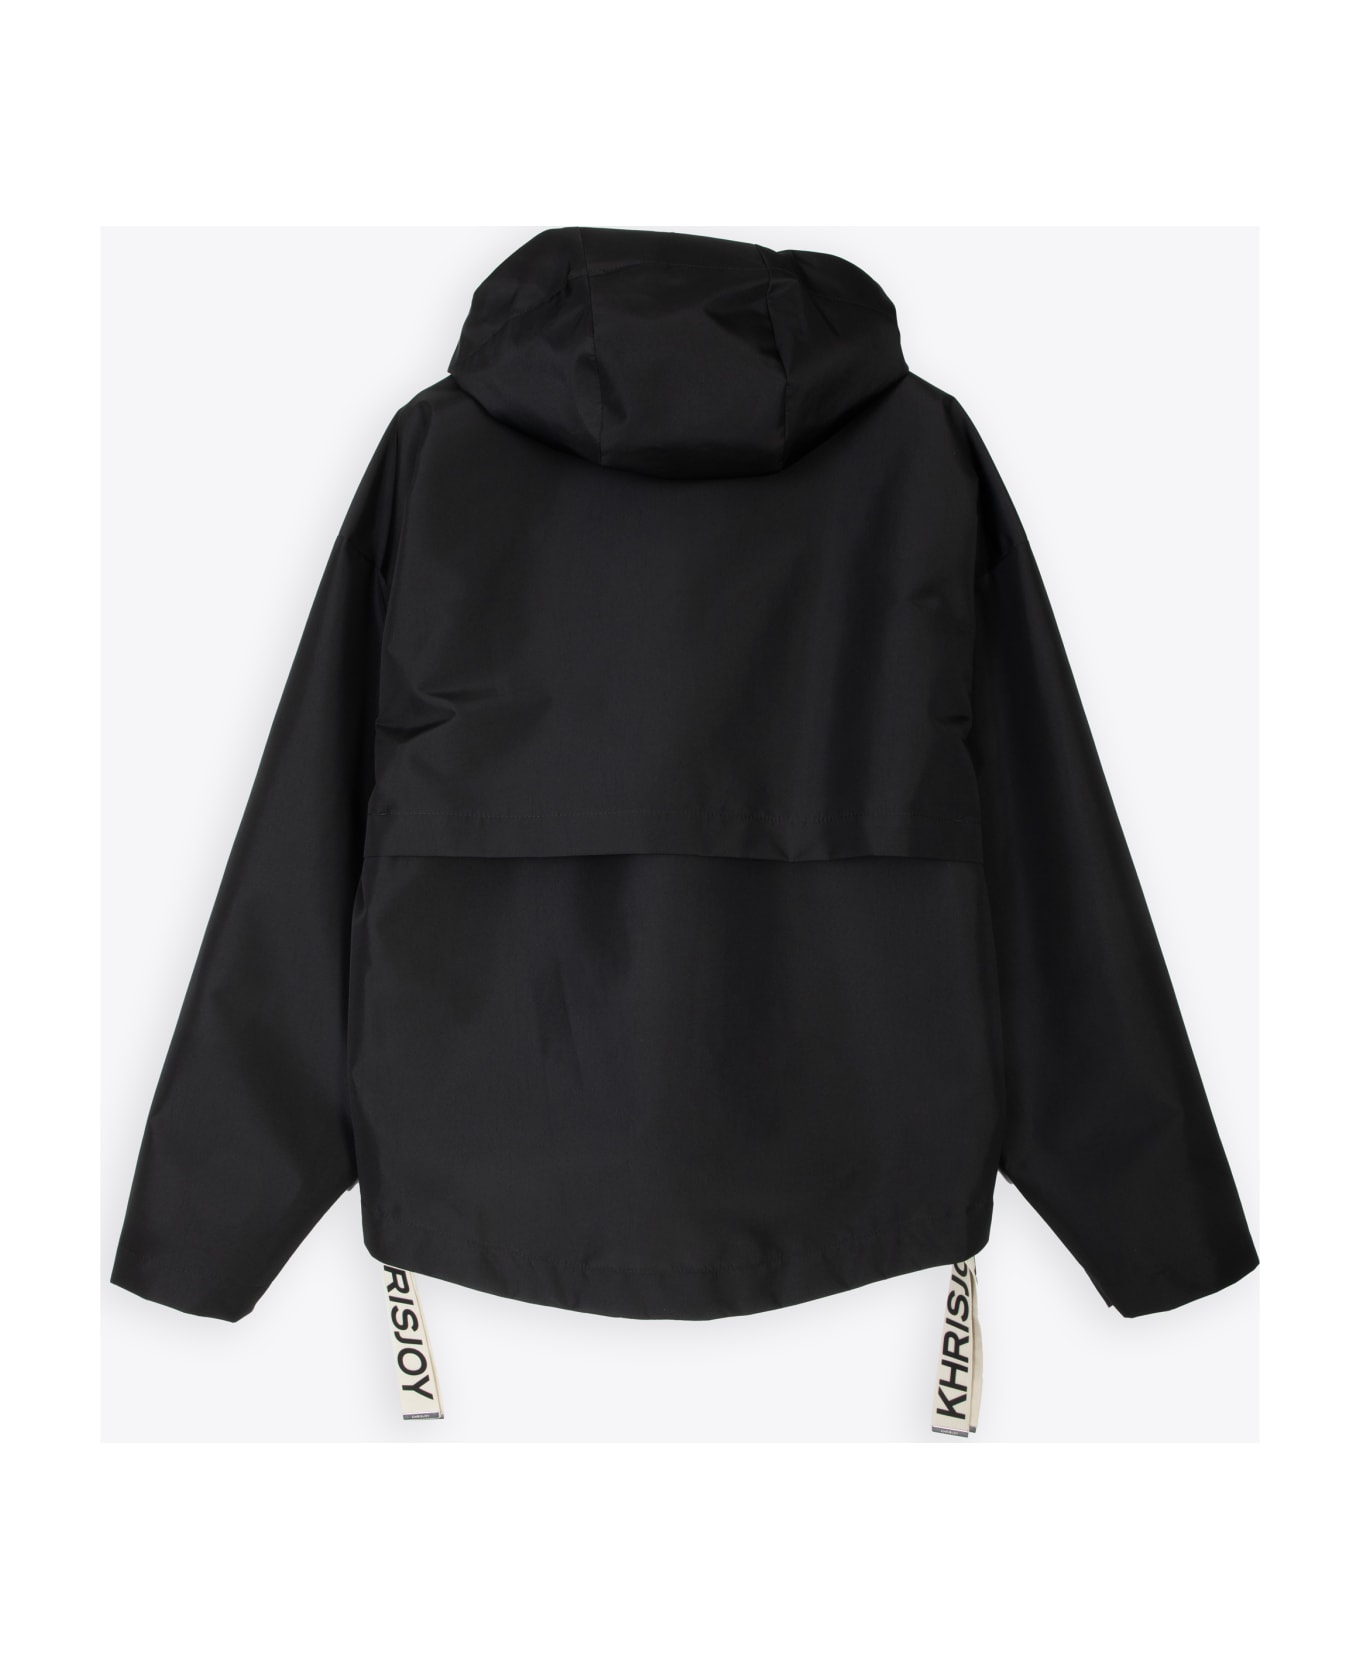 Khrisjoy Shell Windbreaker Black nylon windproof hooded jacket - Shell Windbreaker - Nero